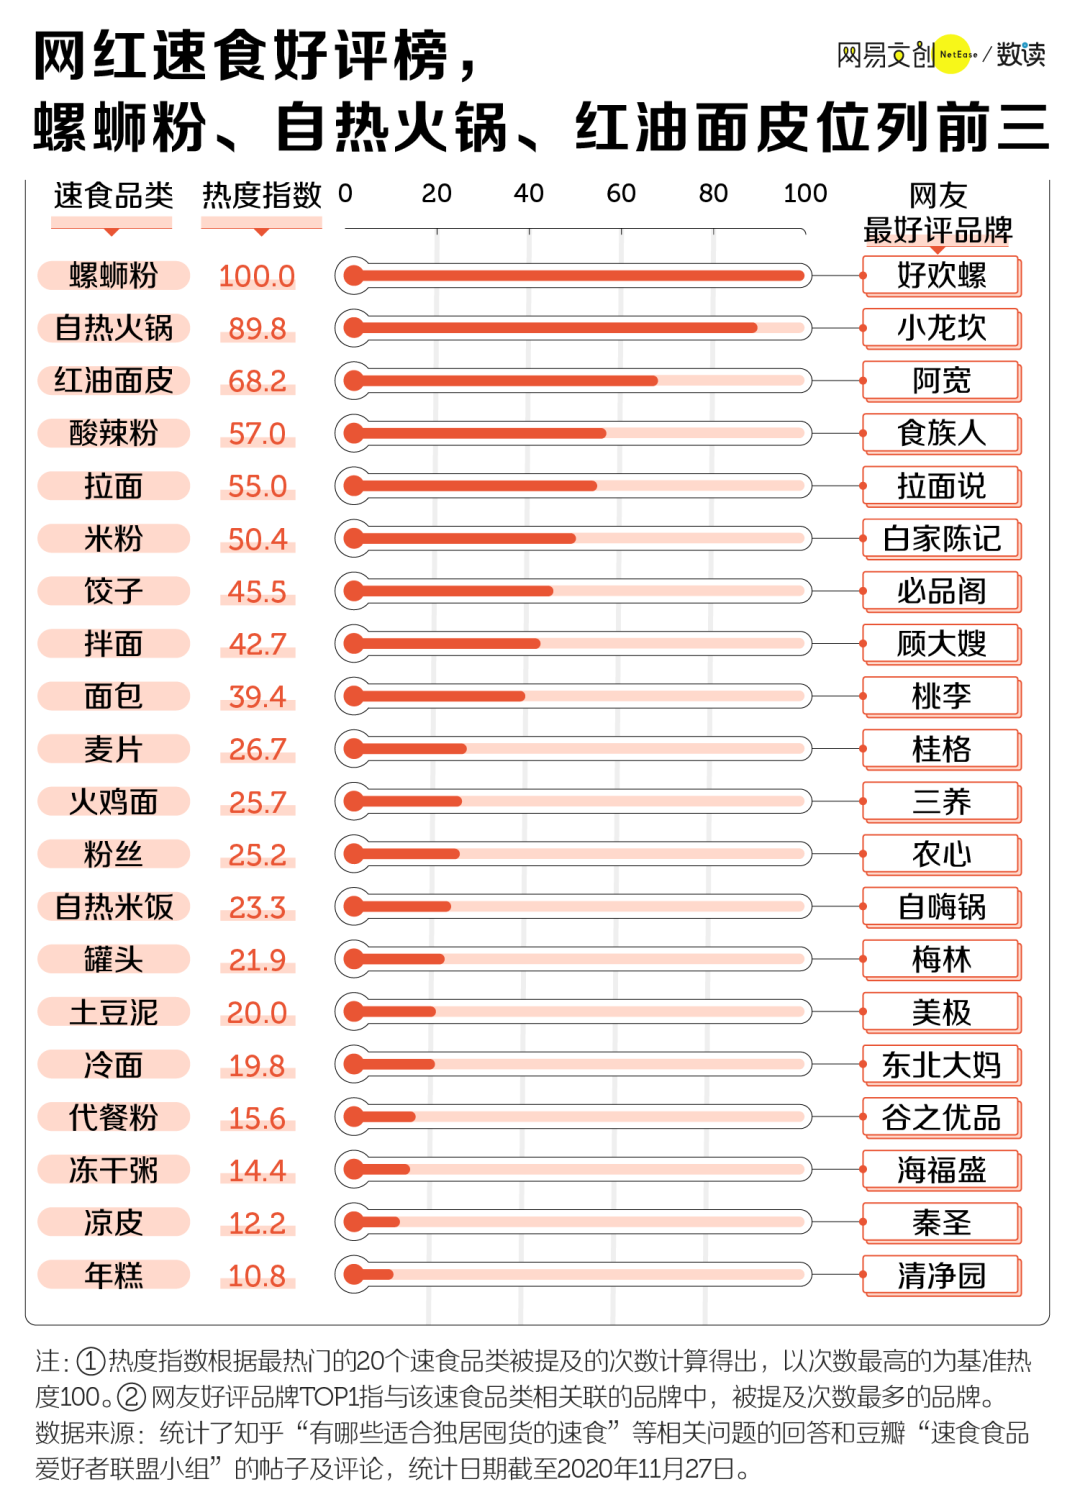 中国人最喜欢的速食是什么 网红速食好评排行榜